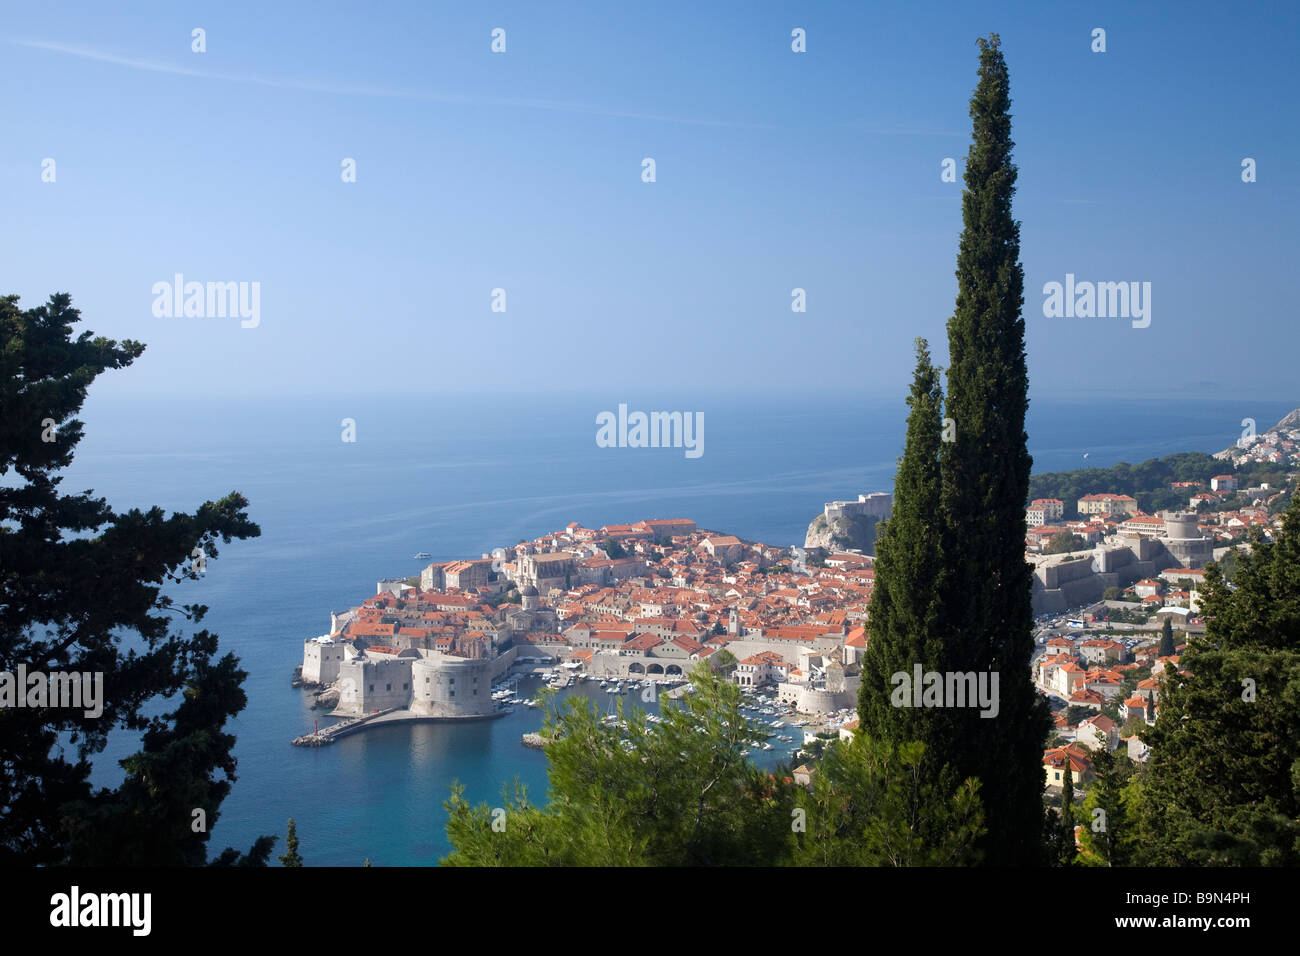 La vieille ville de Dubrovnik dans le soleil d'été de la côte dalmate Croatie Europe Banque D'Images